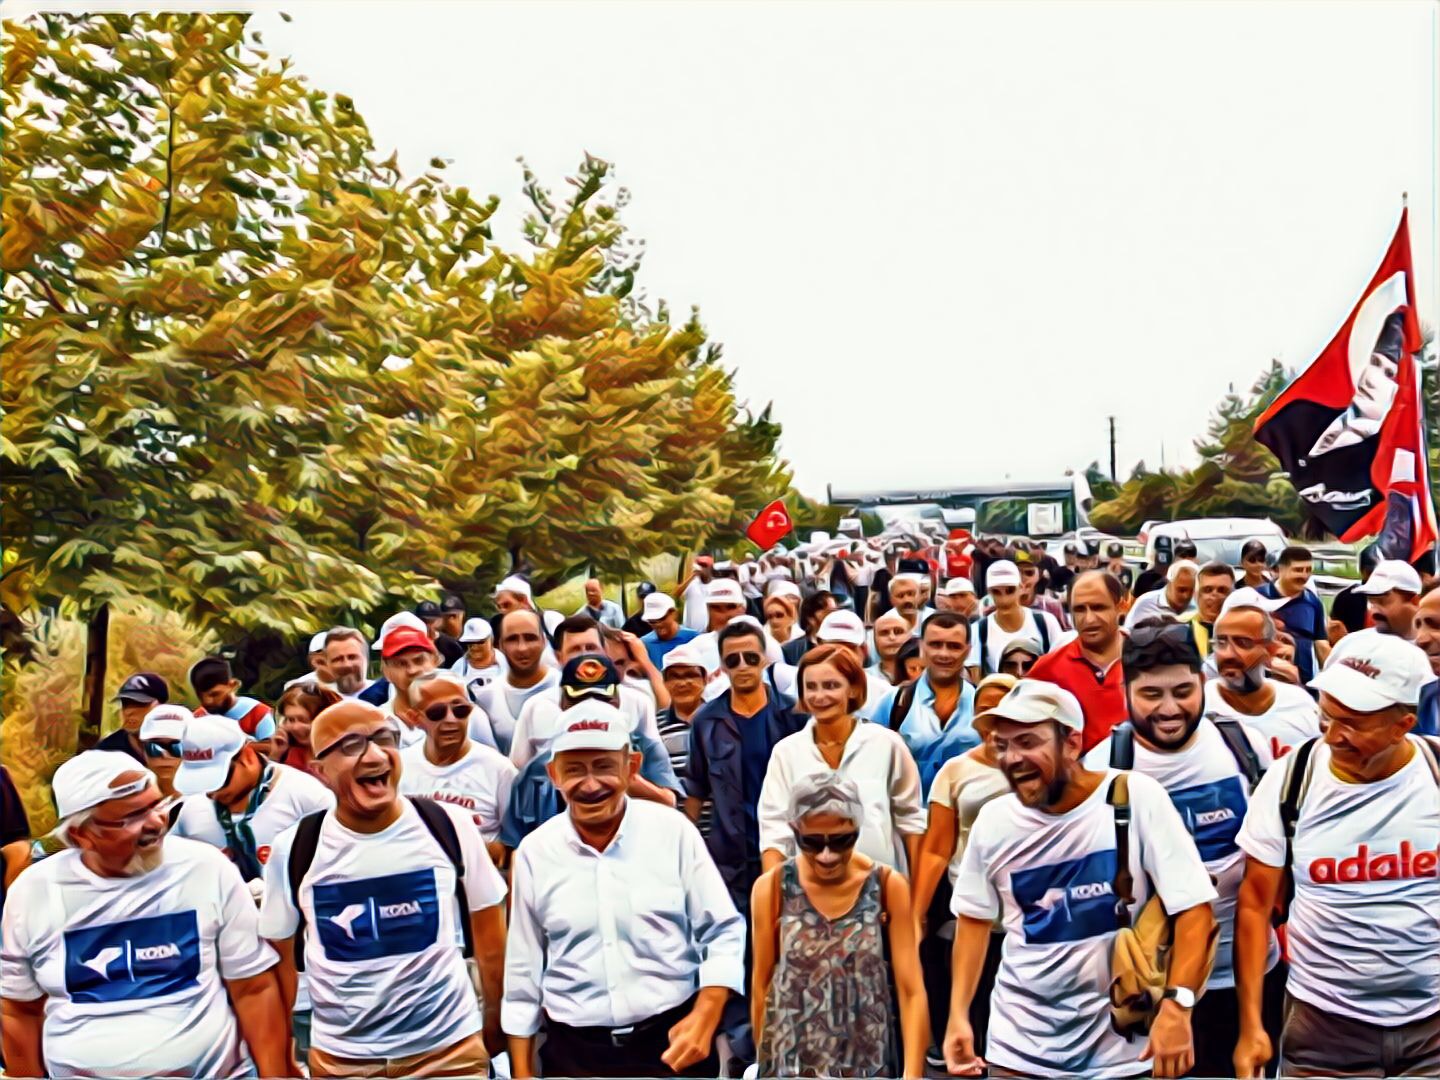 К «Маршу справедливости» в Турции присоединились десятки тысяч людей